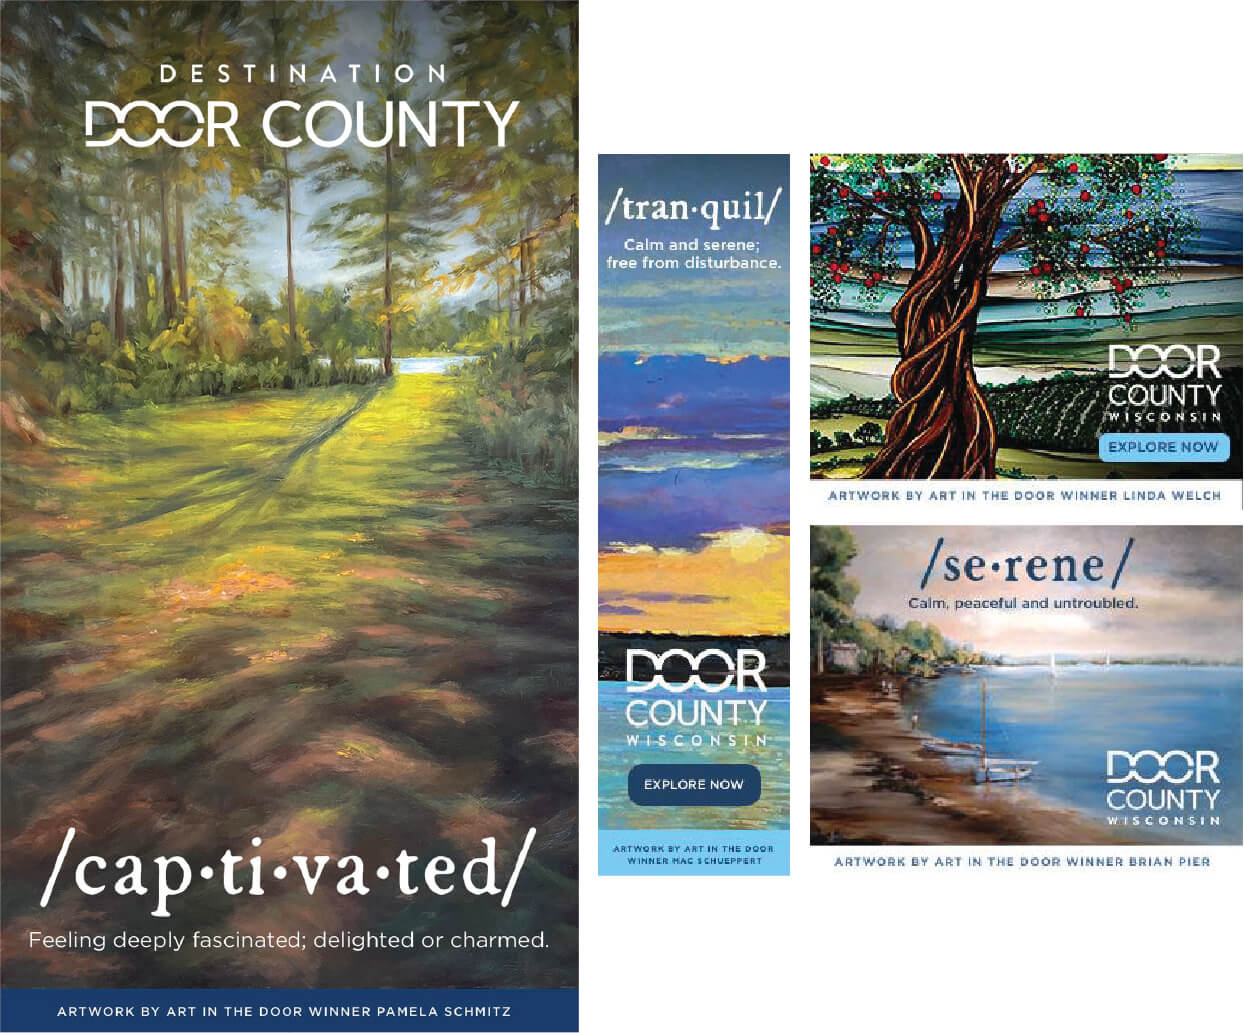 Destination Door County | "ART IN THE DOOR"